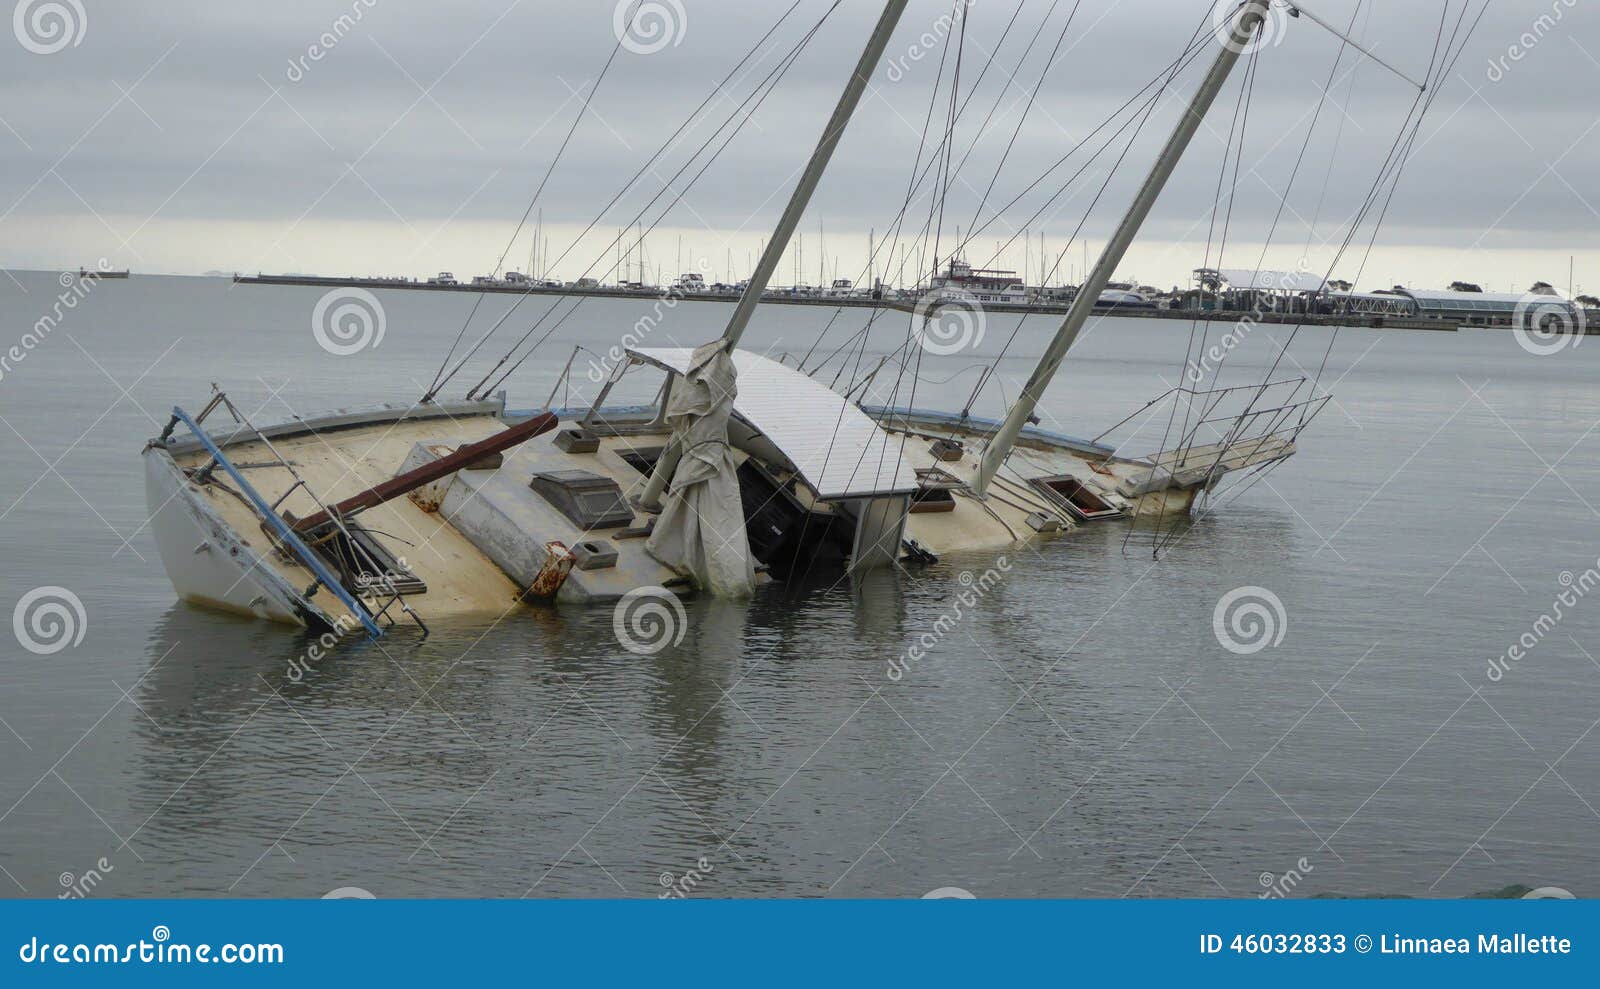 Sinking Ship Stock Photo - Image: 46032833